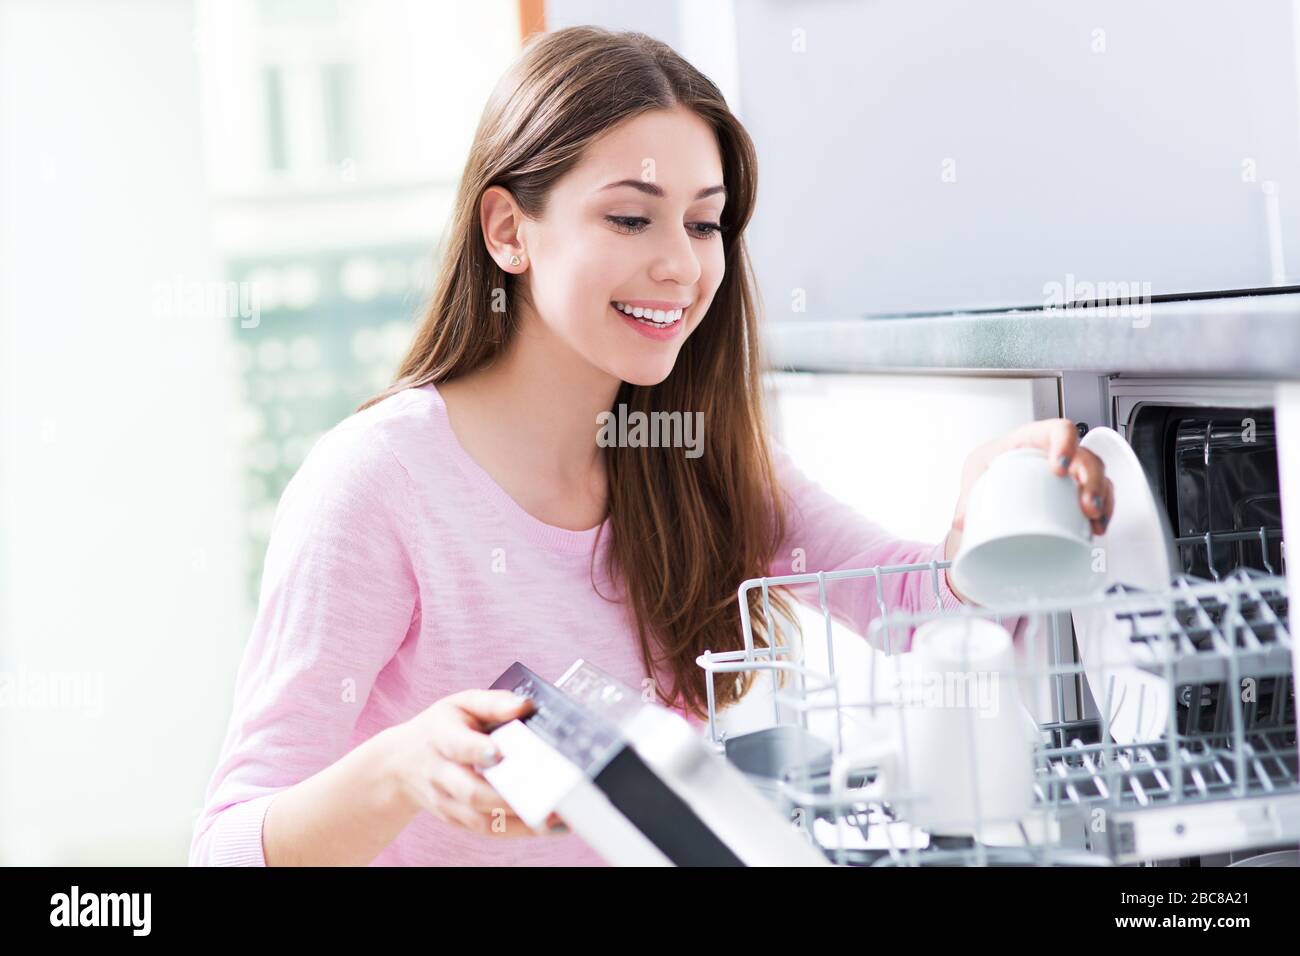 Woman loading dishwasher Stock Photo